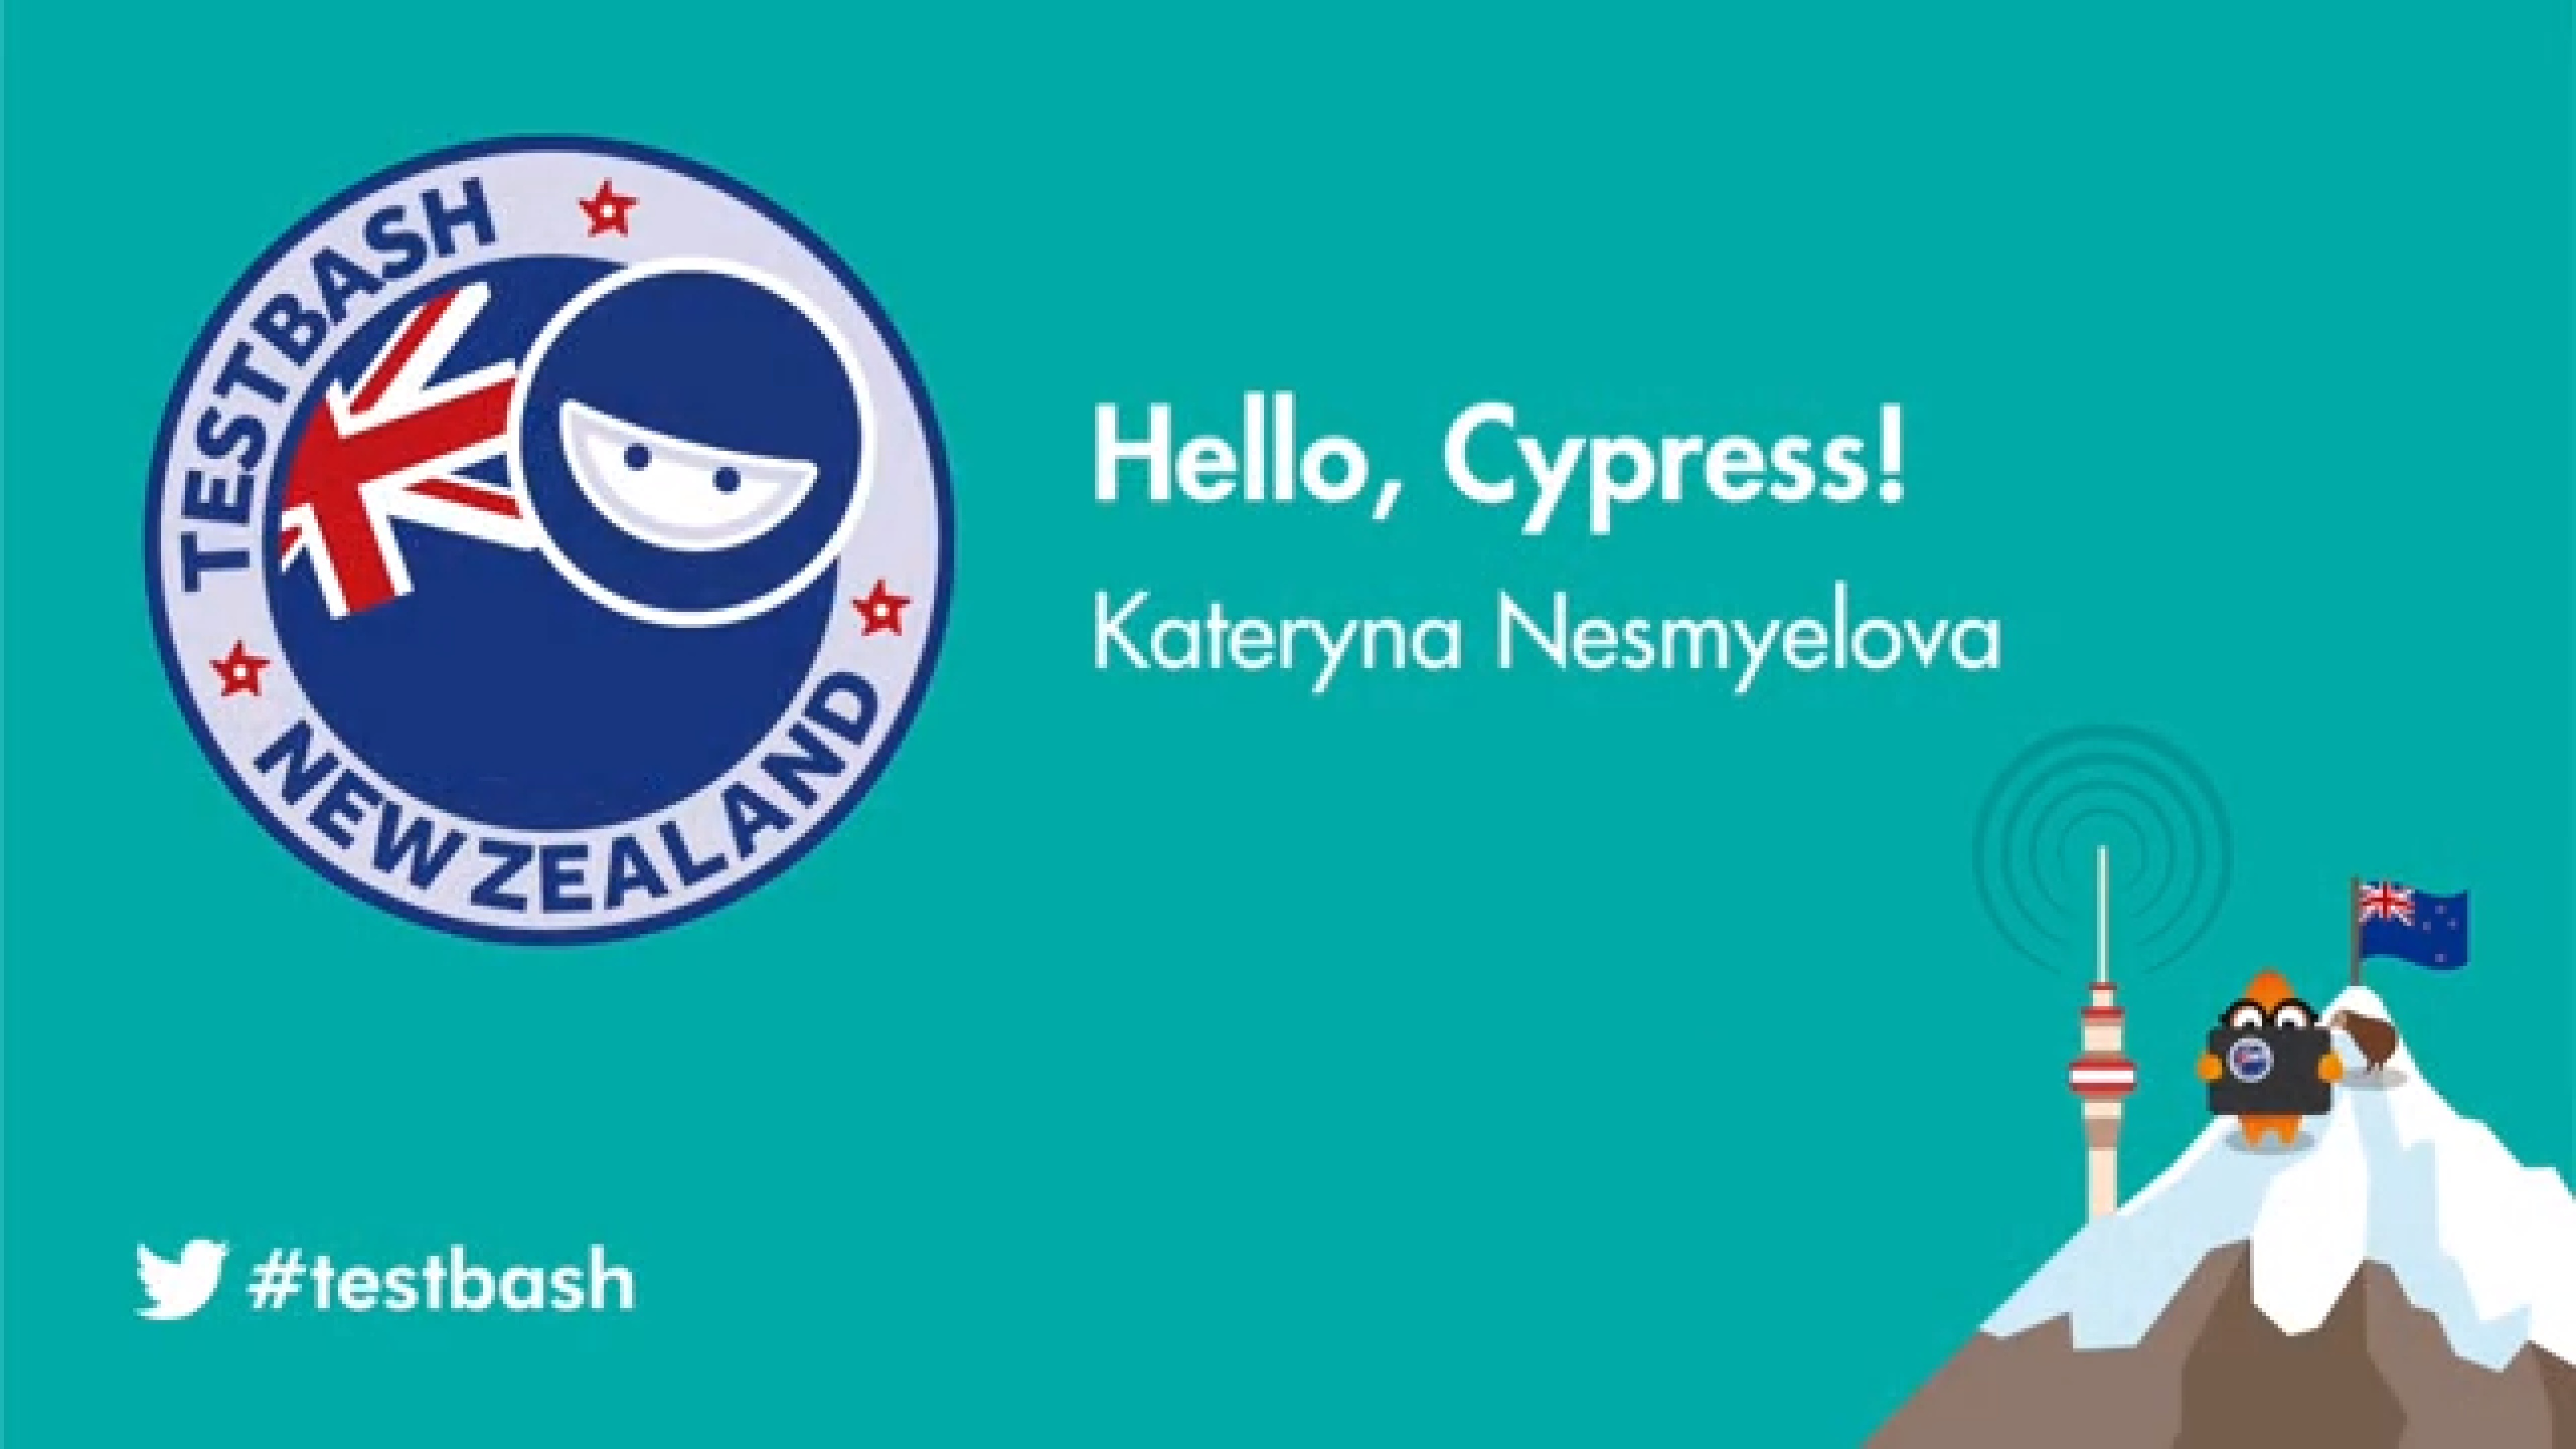 Hello, Cypress! - Kate Nesmyelova